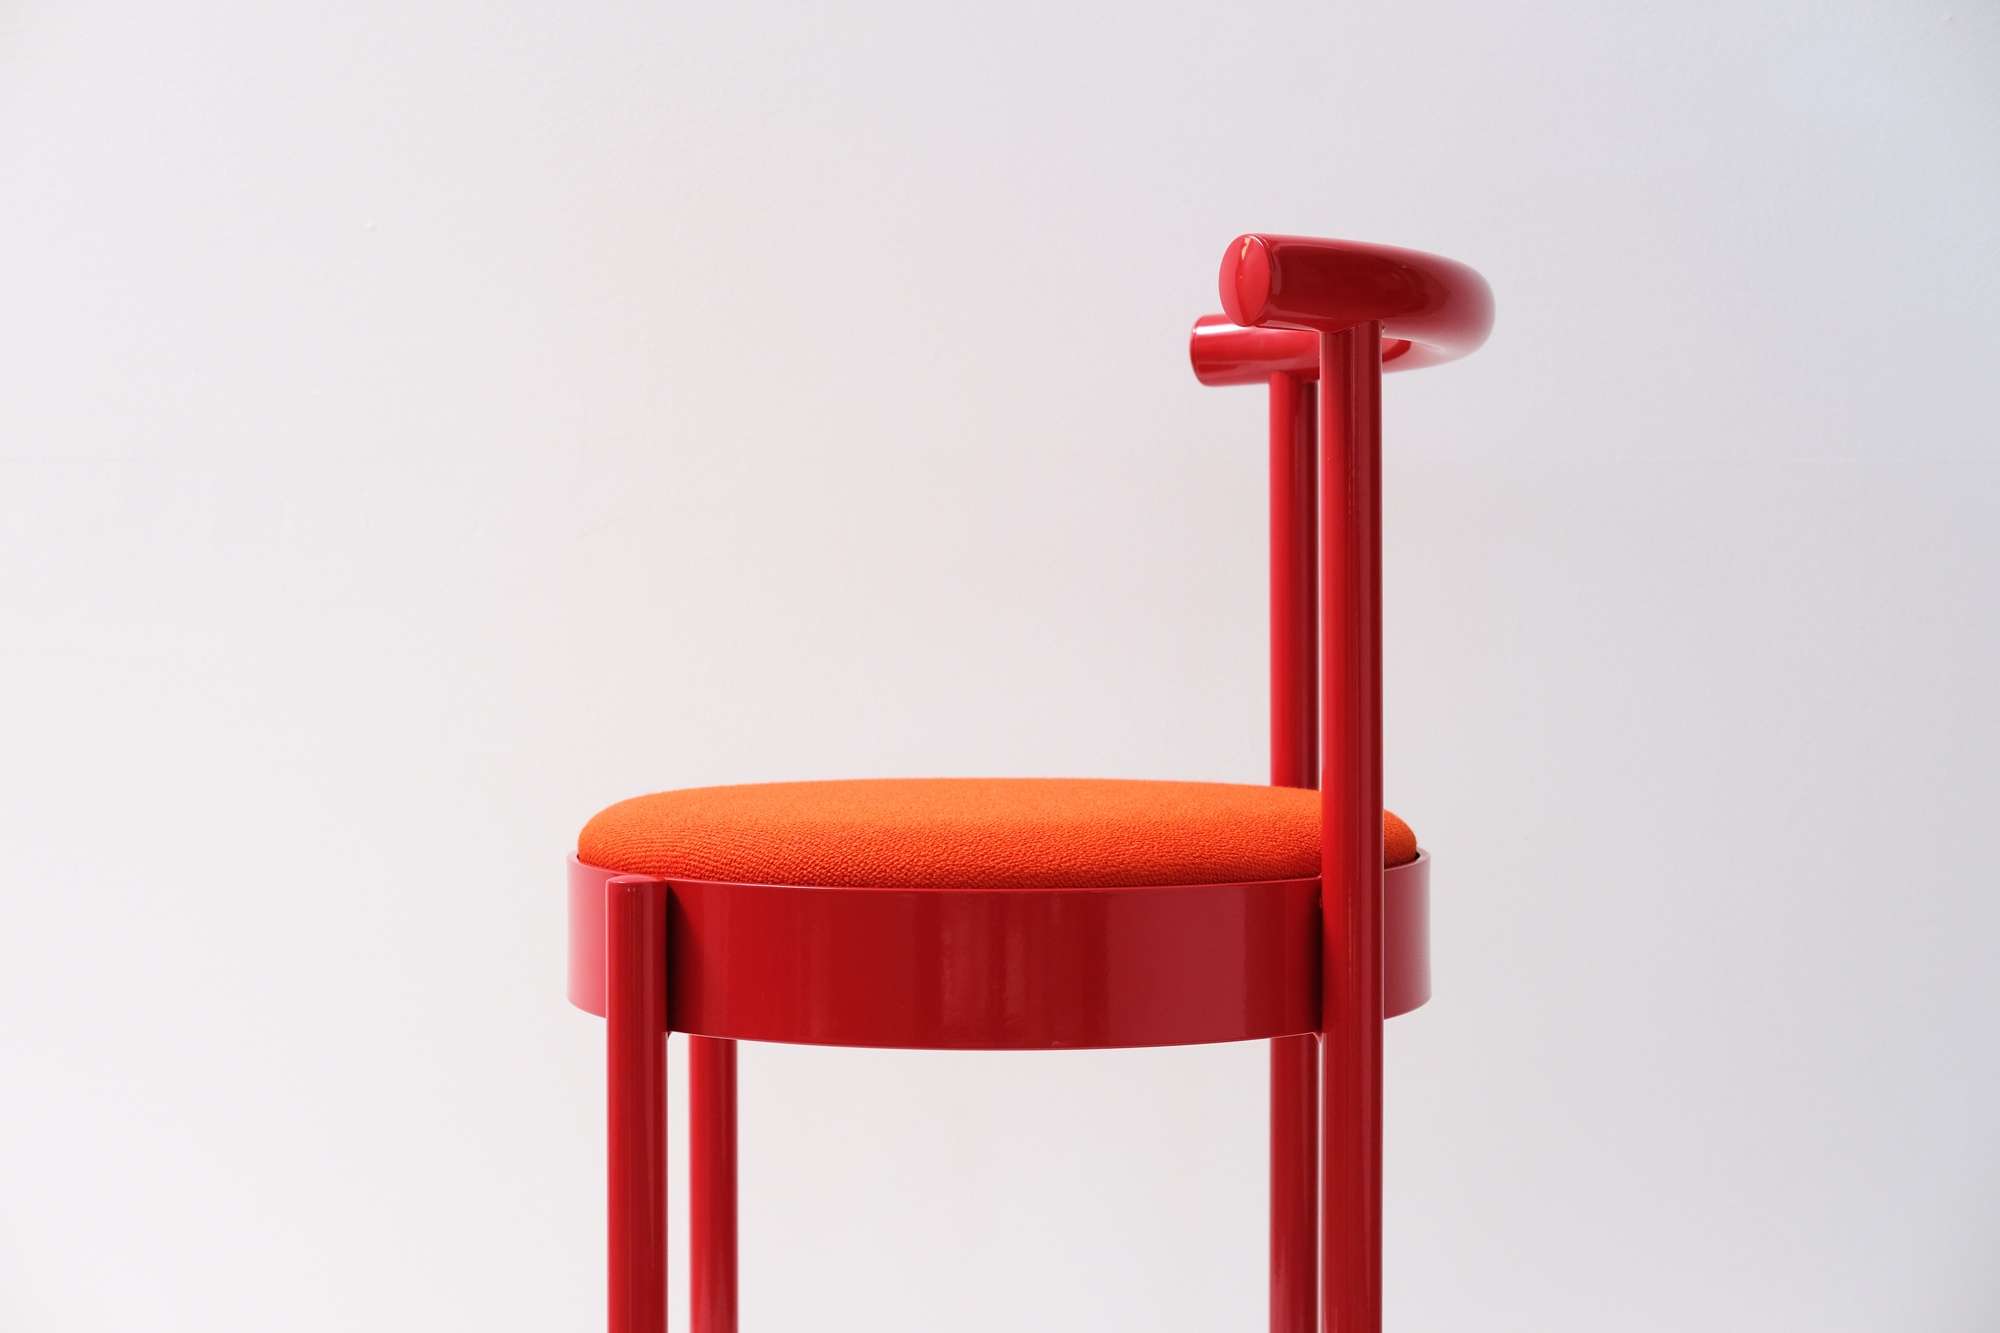 Soft Chair by Daniel To & Emma Aiston